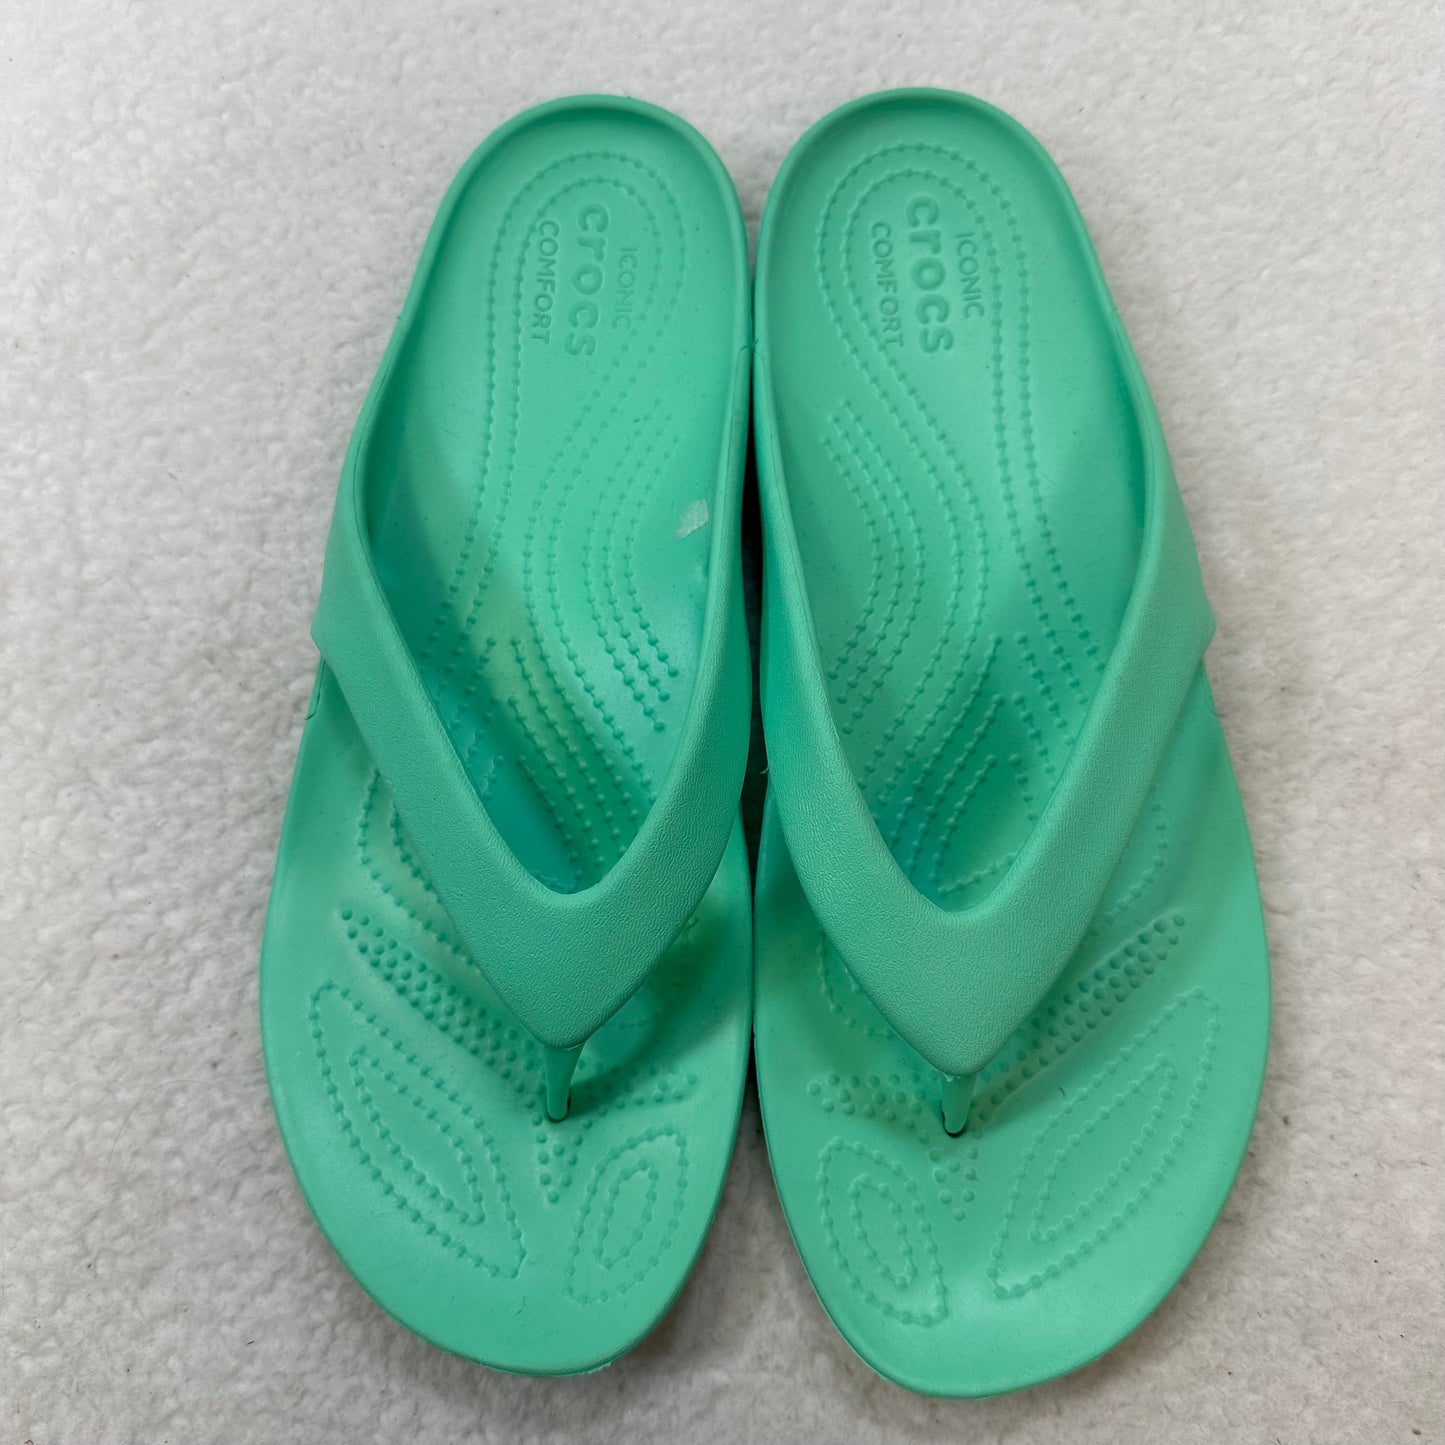 Mint Sandals Flip Flops Crocs, Size 10